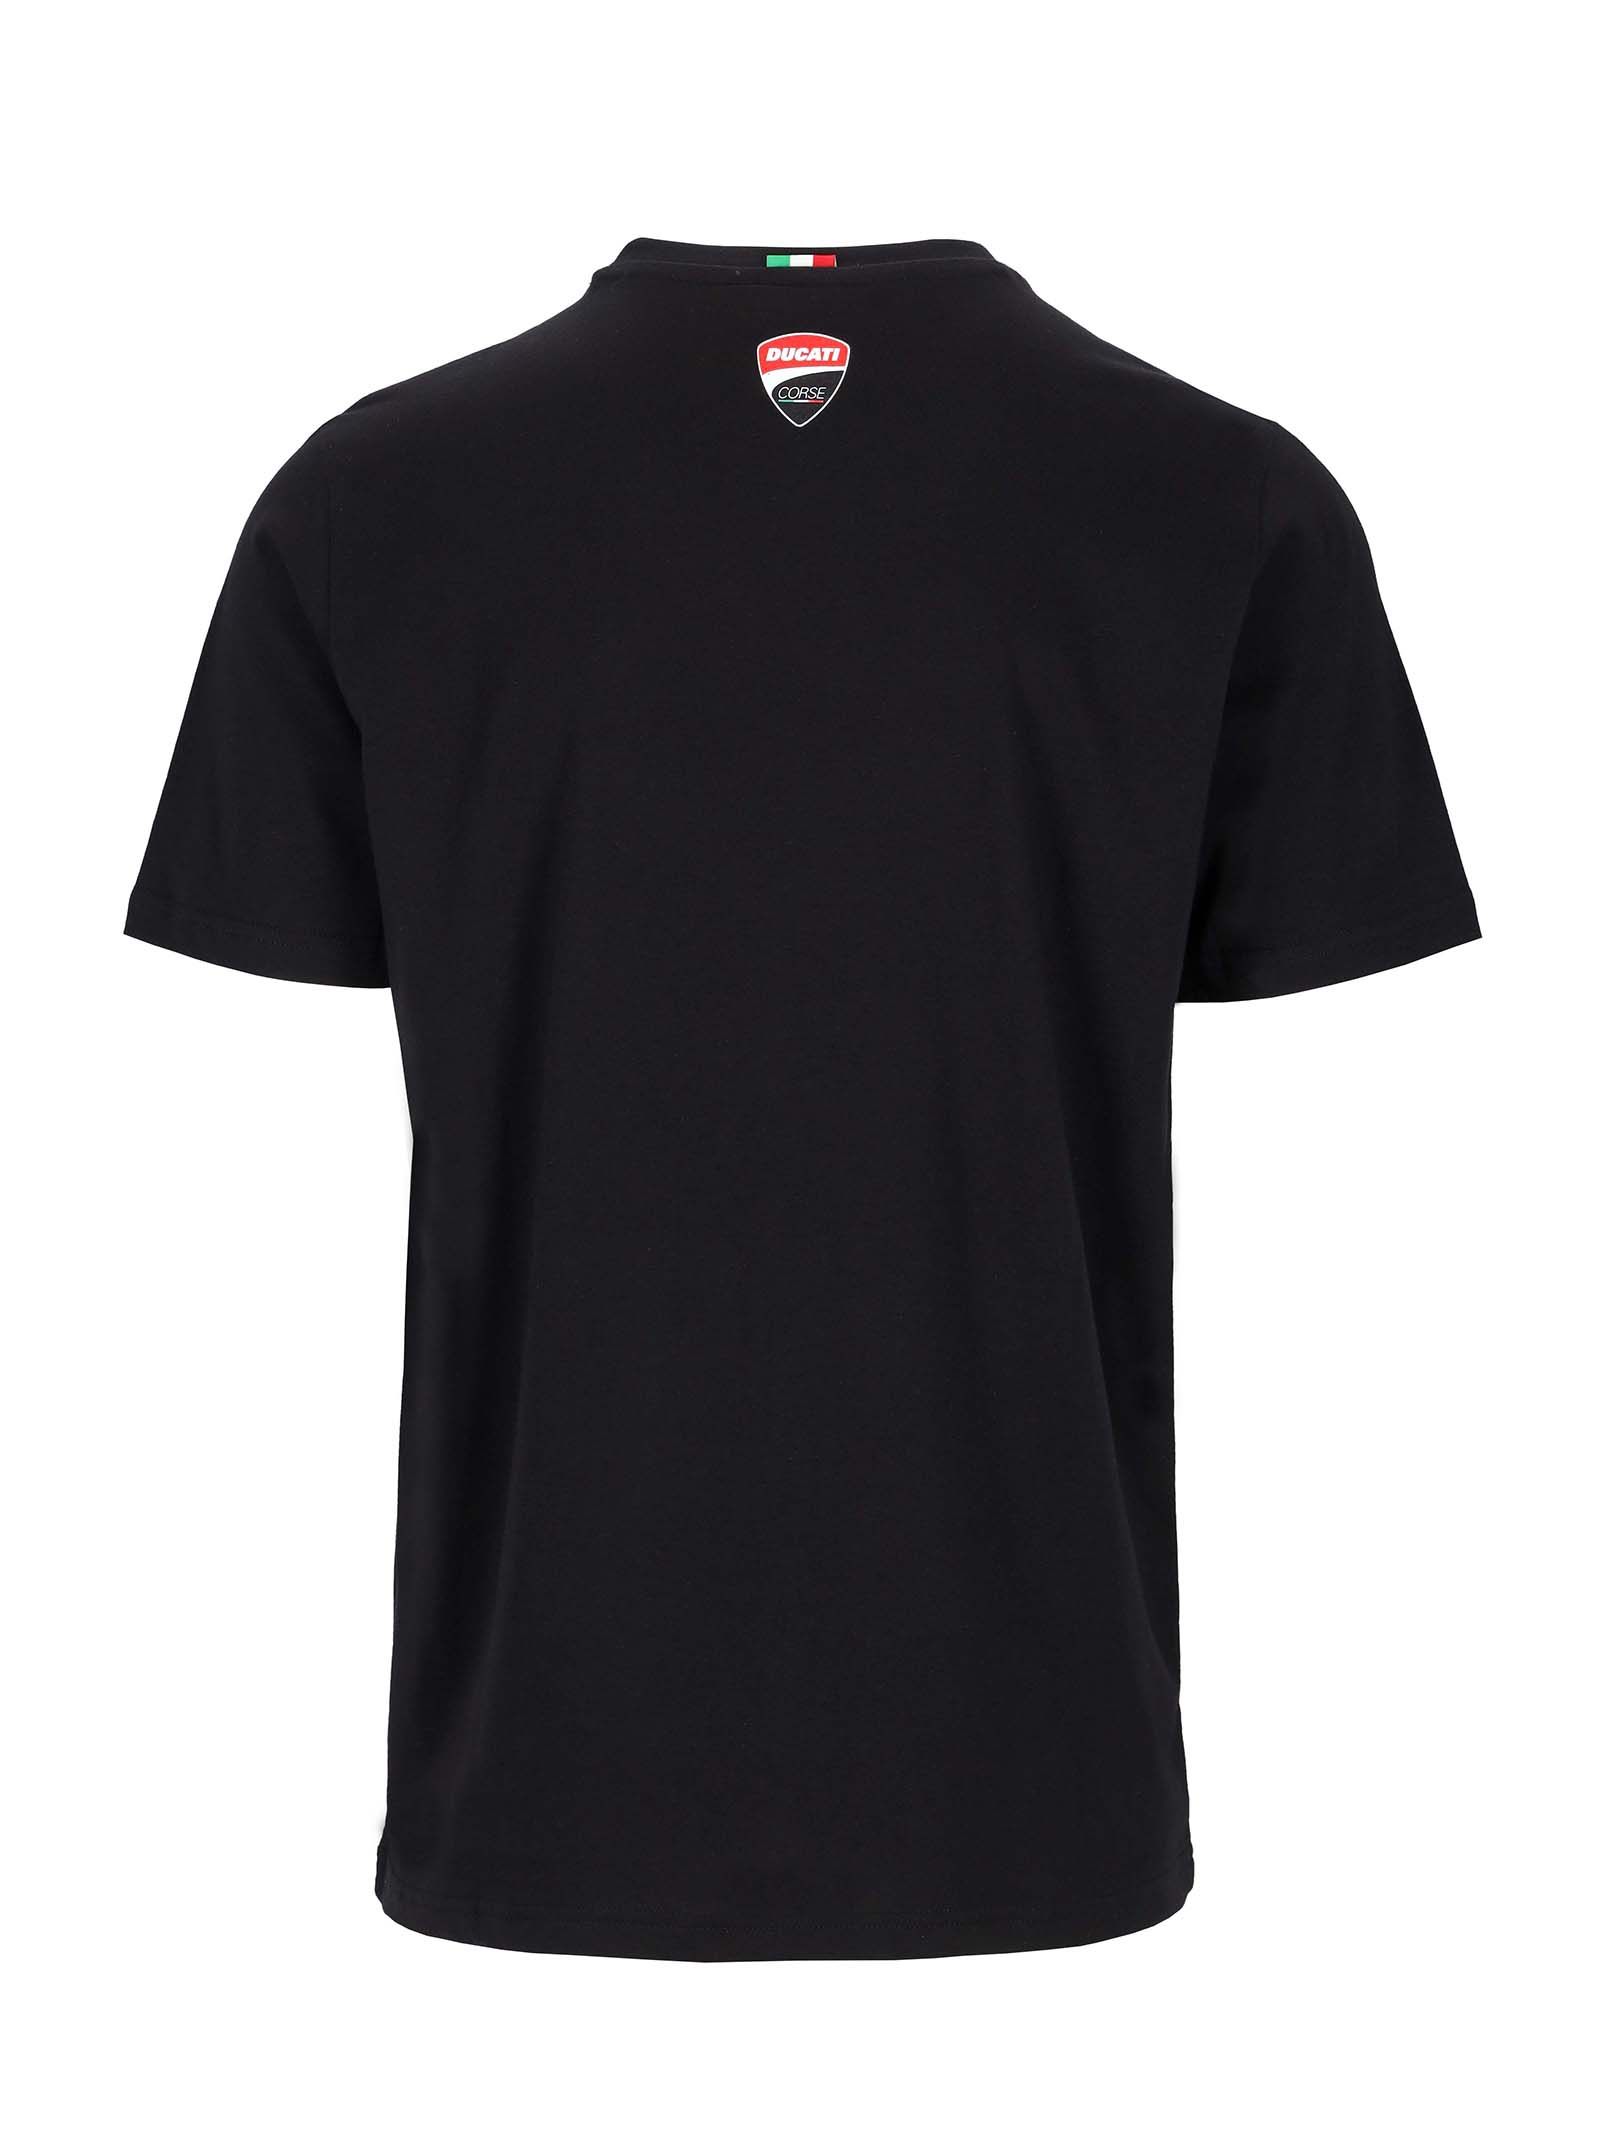 T-shirt Ducati Corse noir avec bande rouge vue dos